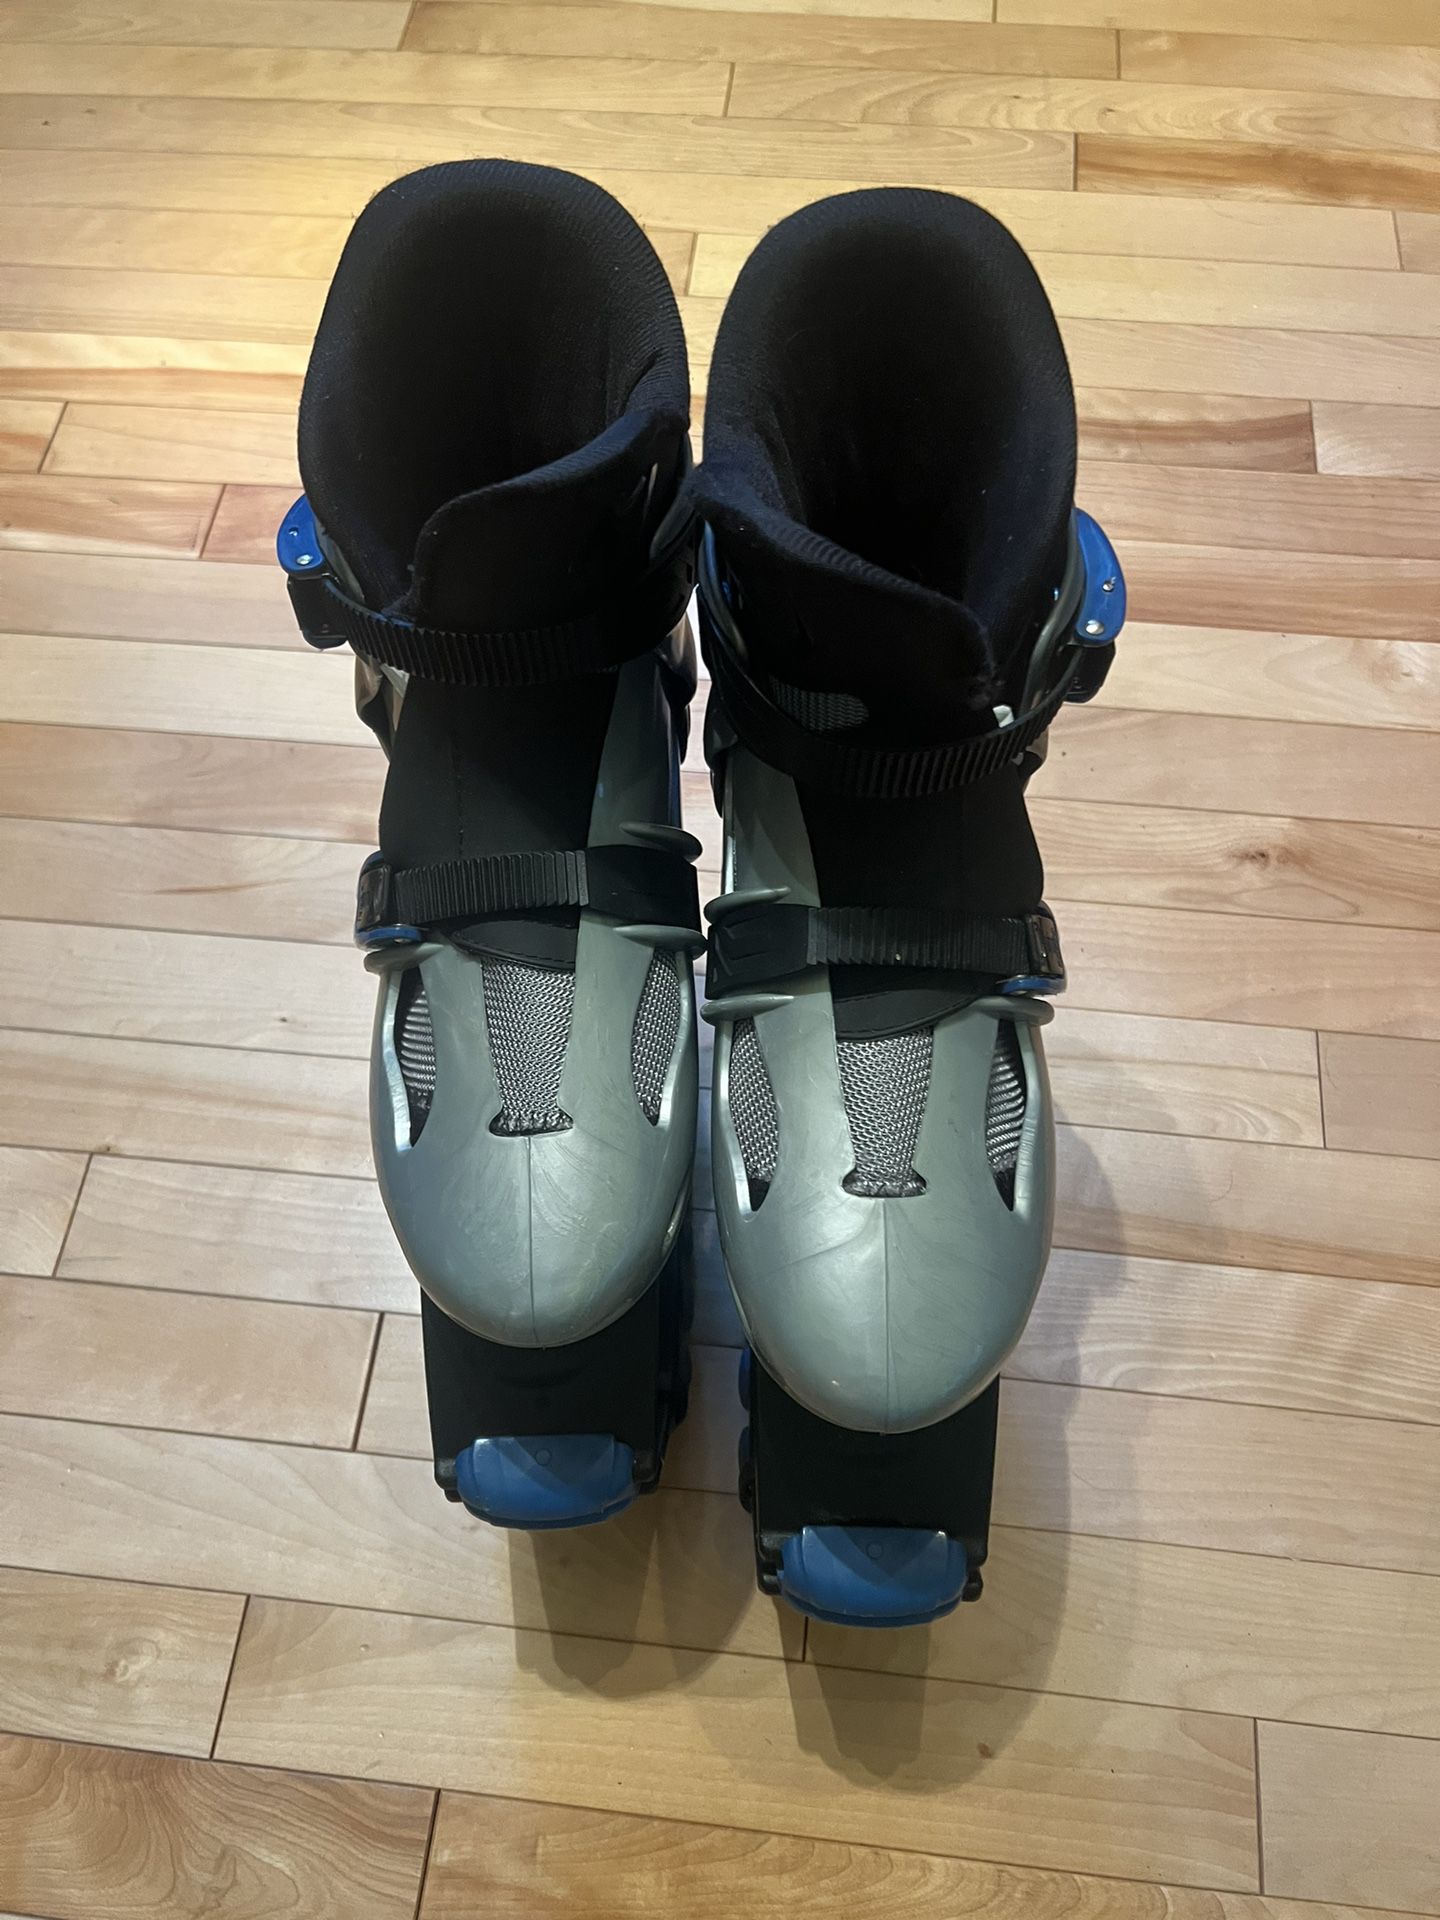 Unisex Kangoo Jumps Rebound Shoes Size 4-6 